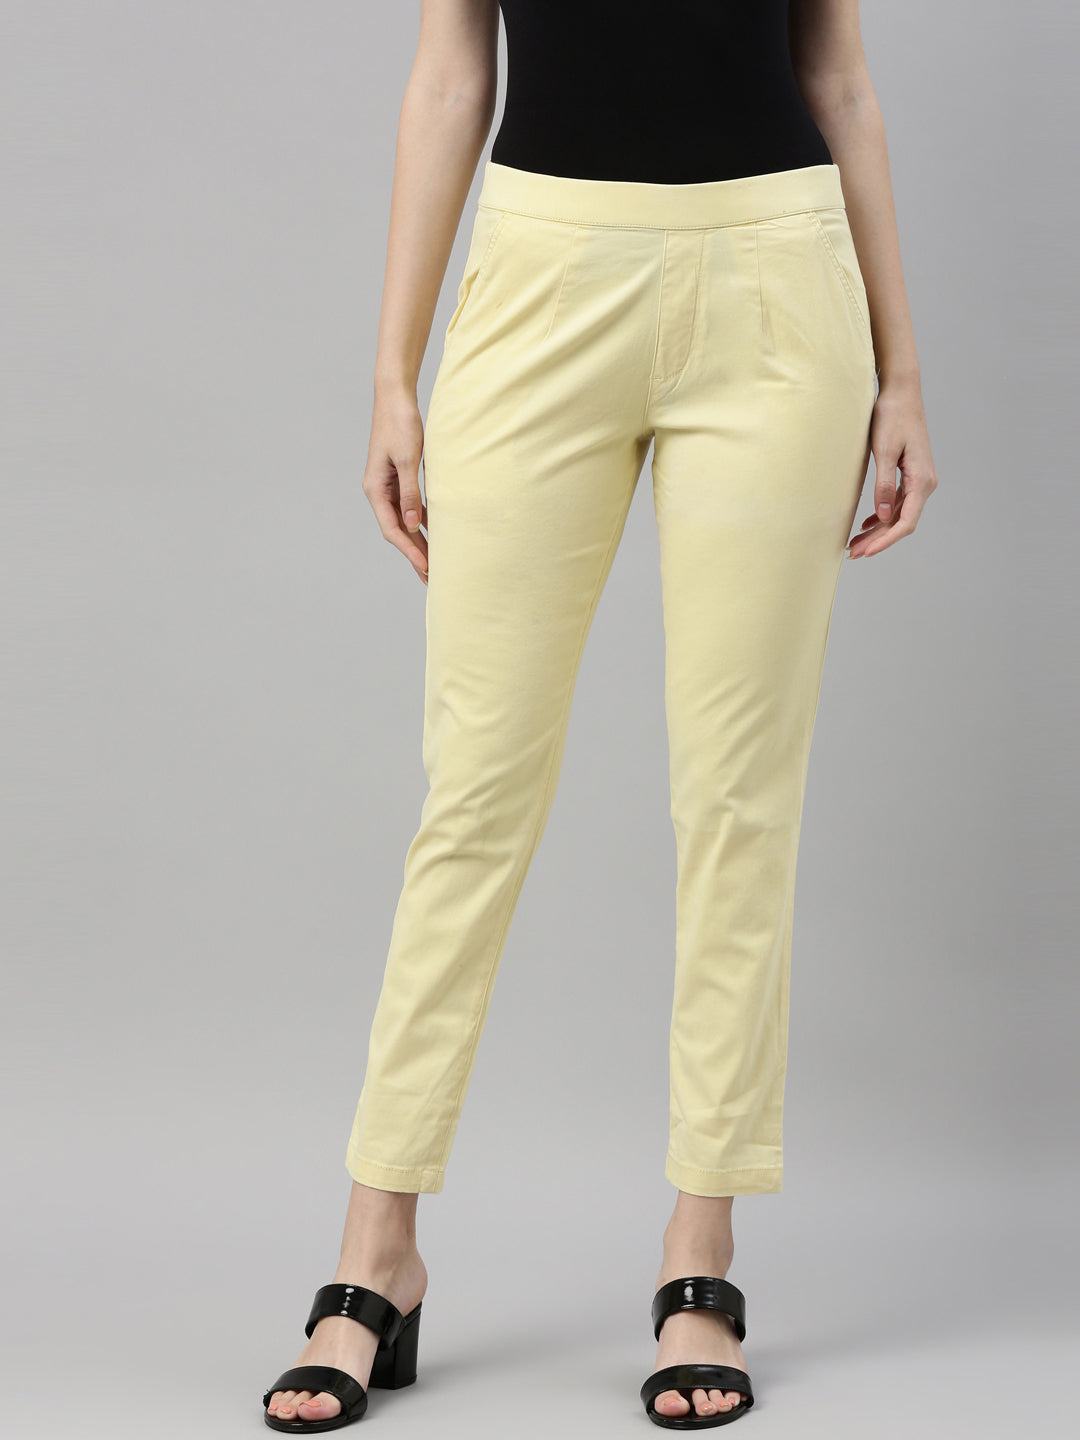 Koton Pants - Yellow - Cigarette pants - Trendyol